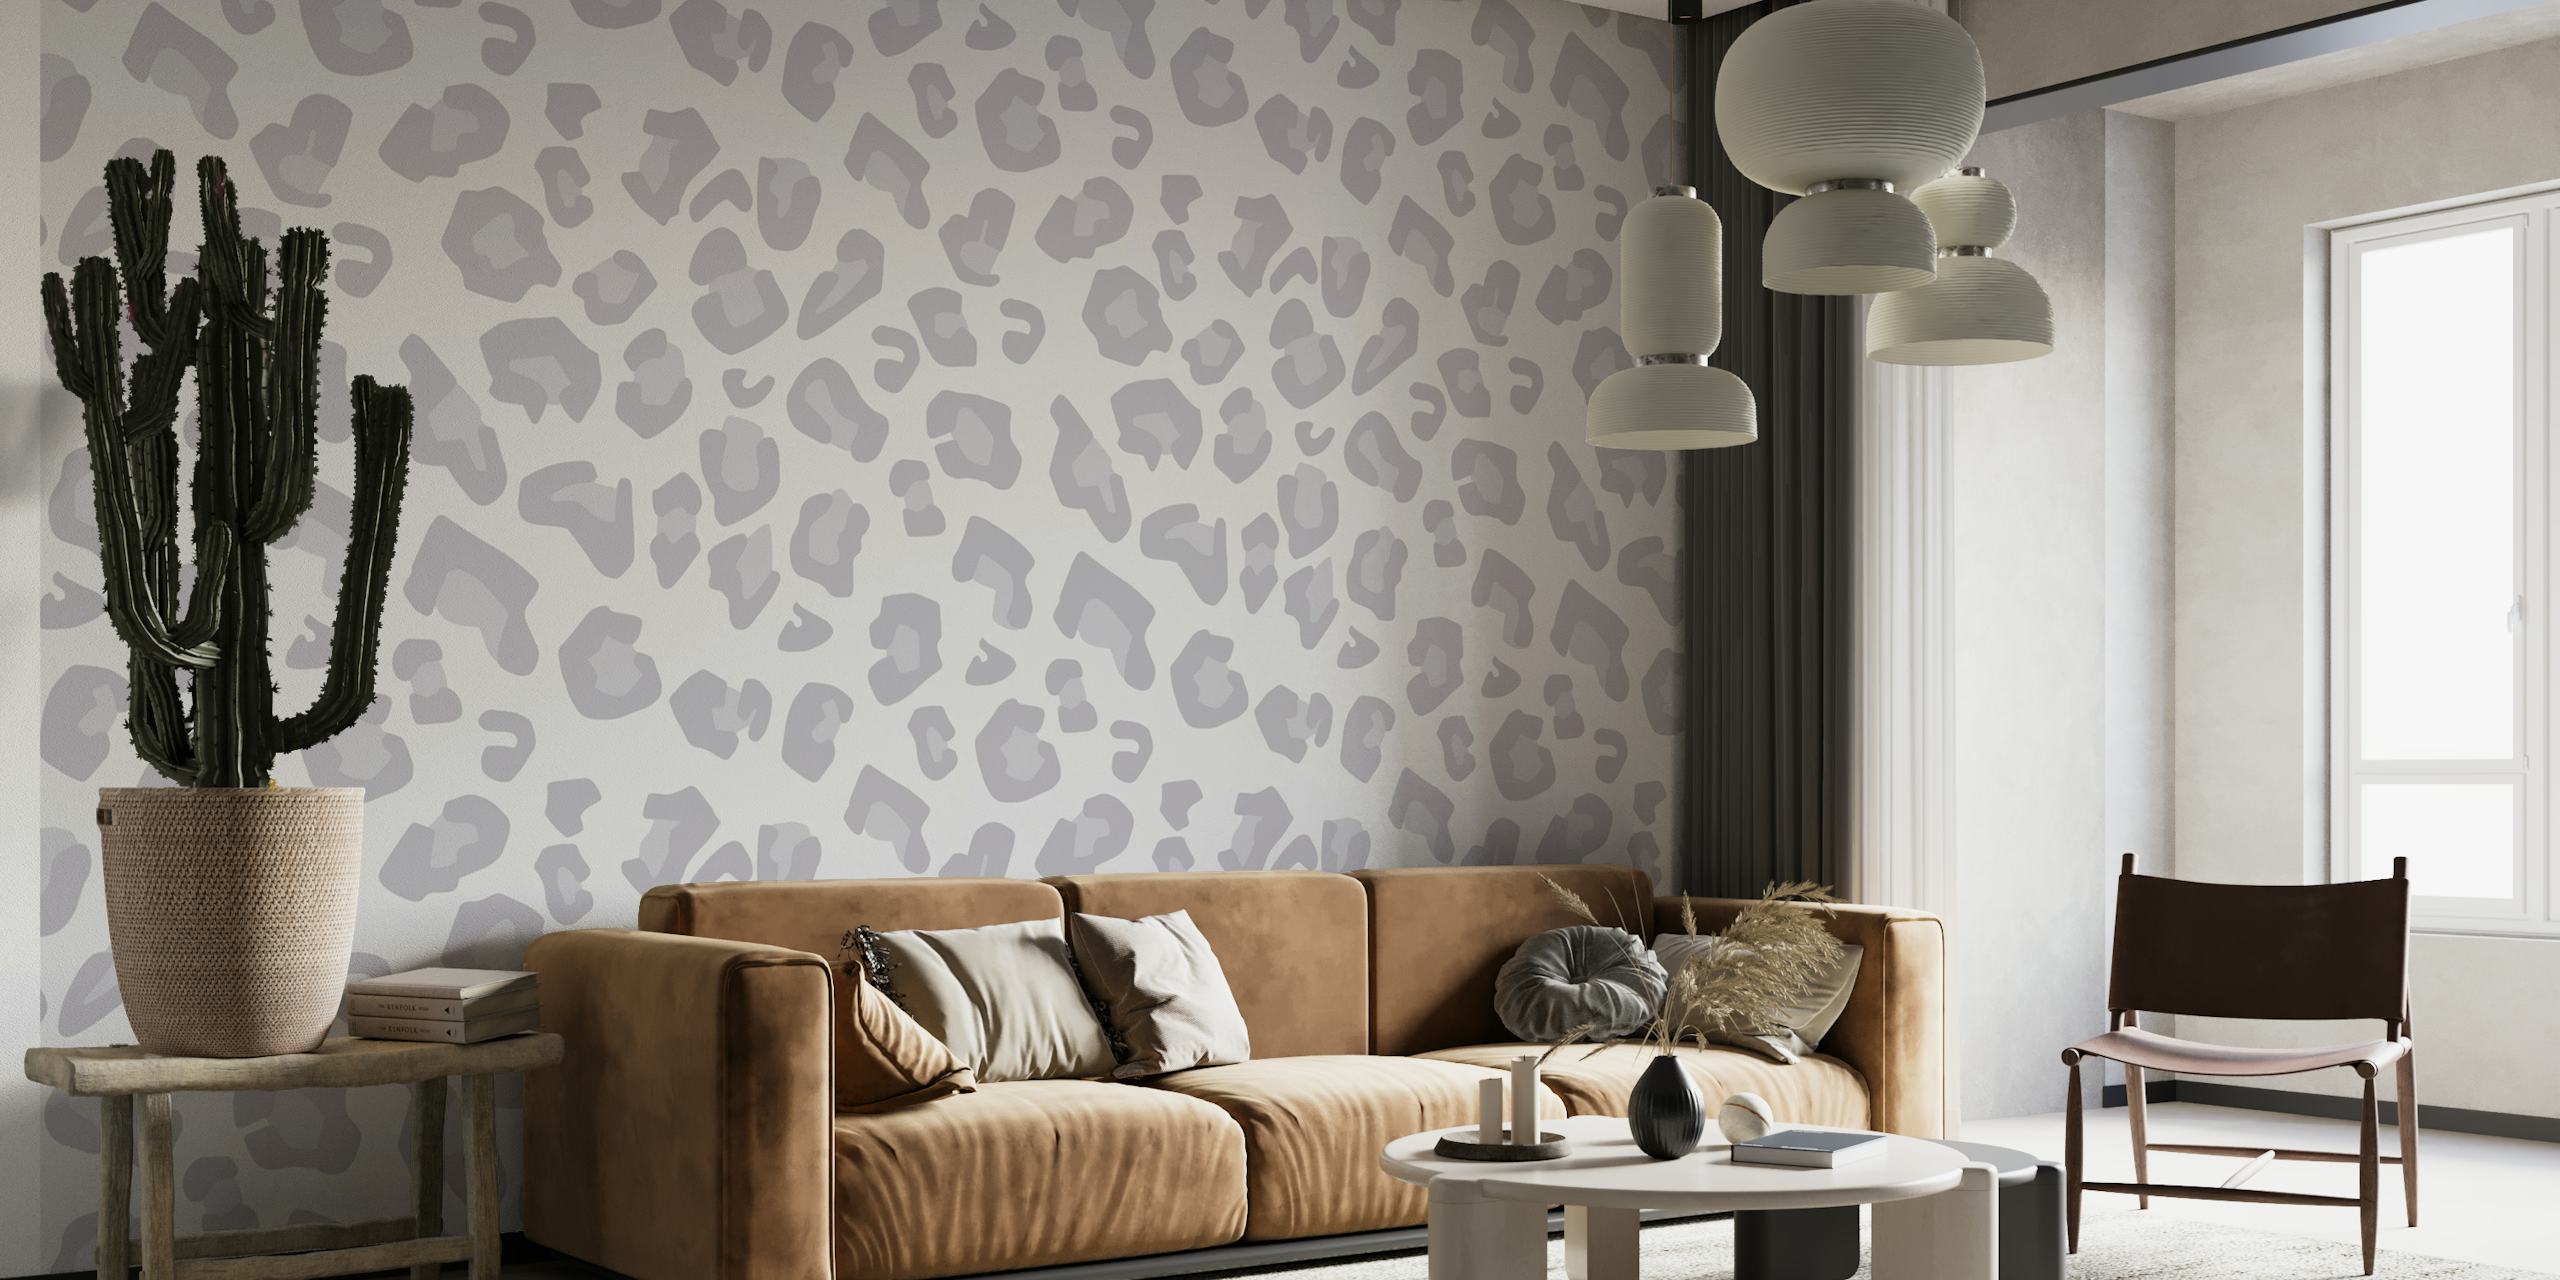 Mural de parede moderno com estampa de leopardo cinza pálido e um design sutil e sofisticado